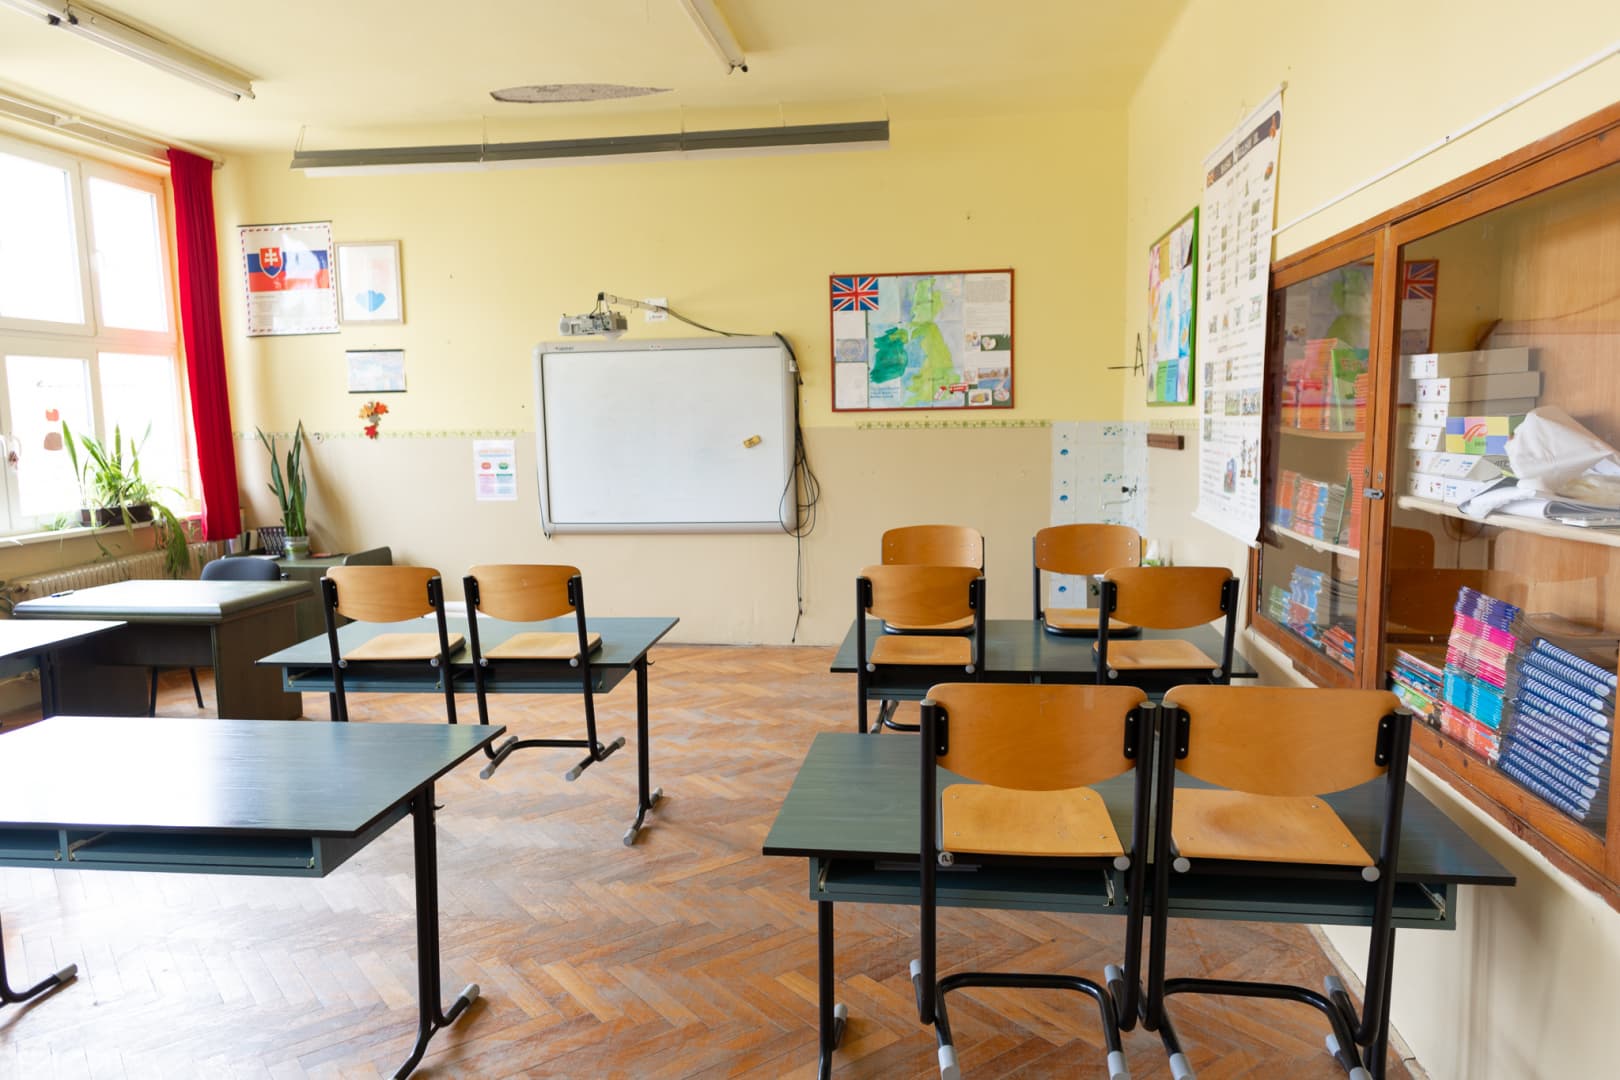 Hivatalos: az oktatásügyi minisztérium eltörli az egyik iskolai szünetet, a szakszervezet ellenzi